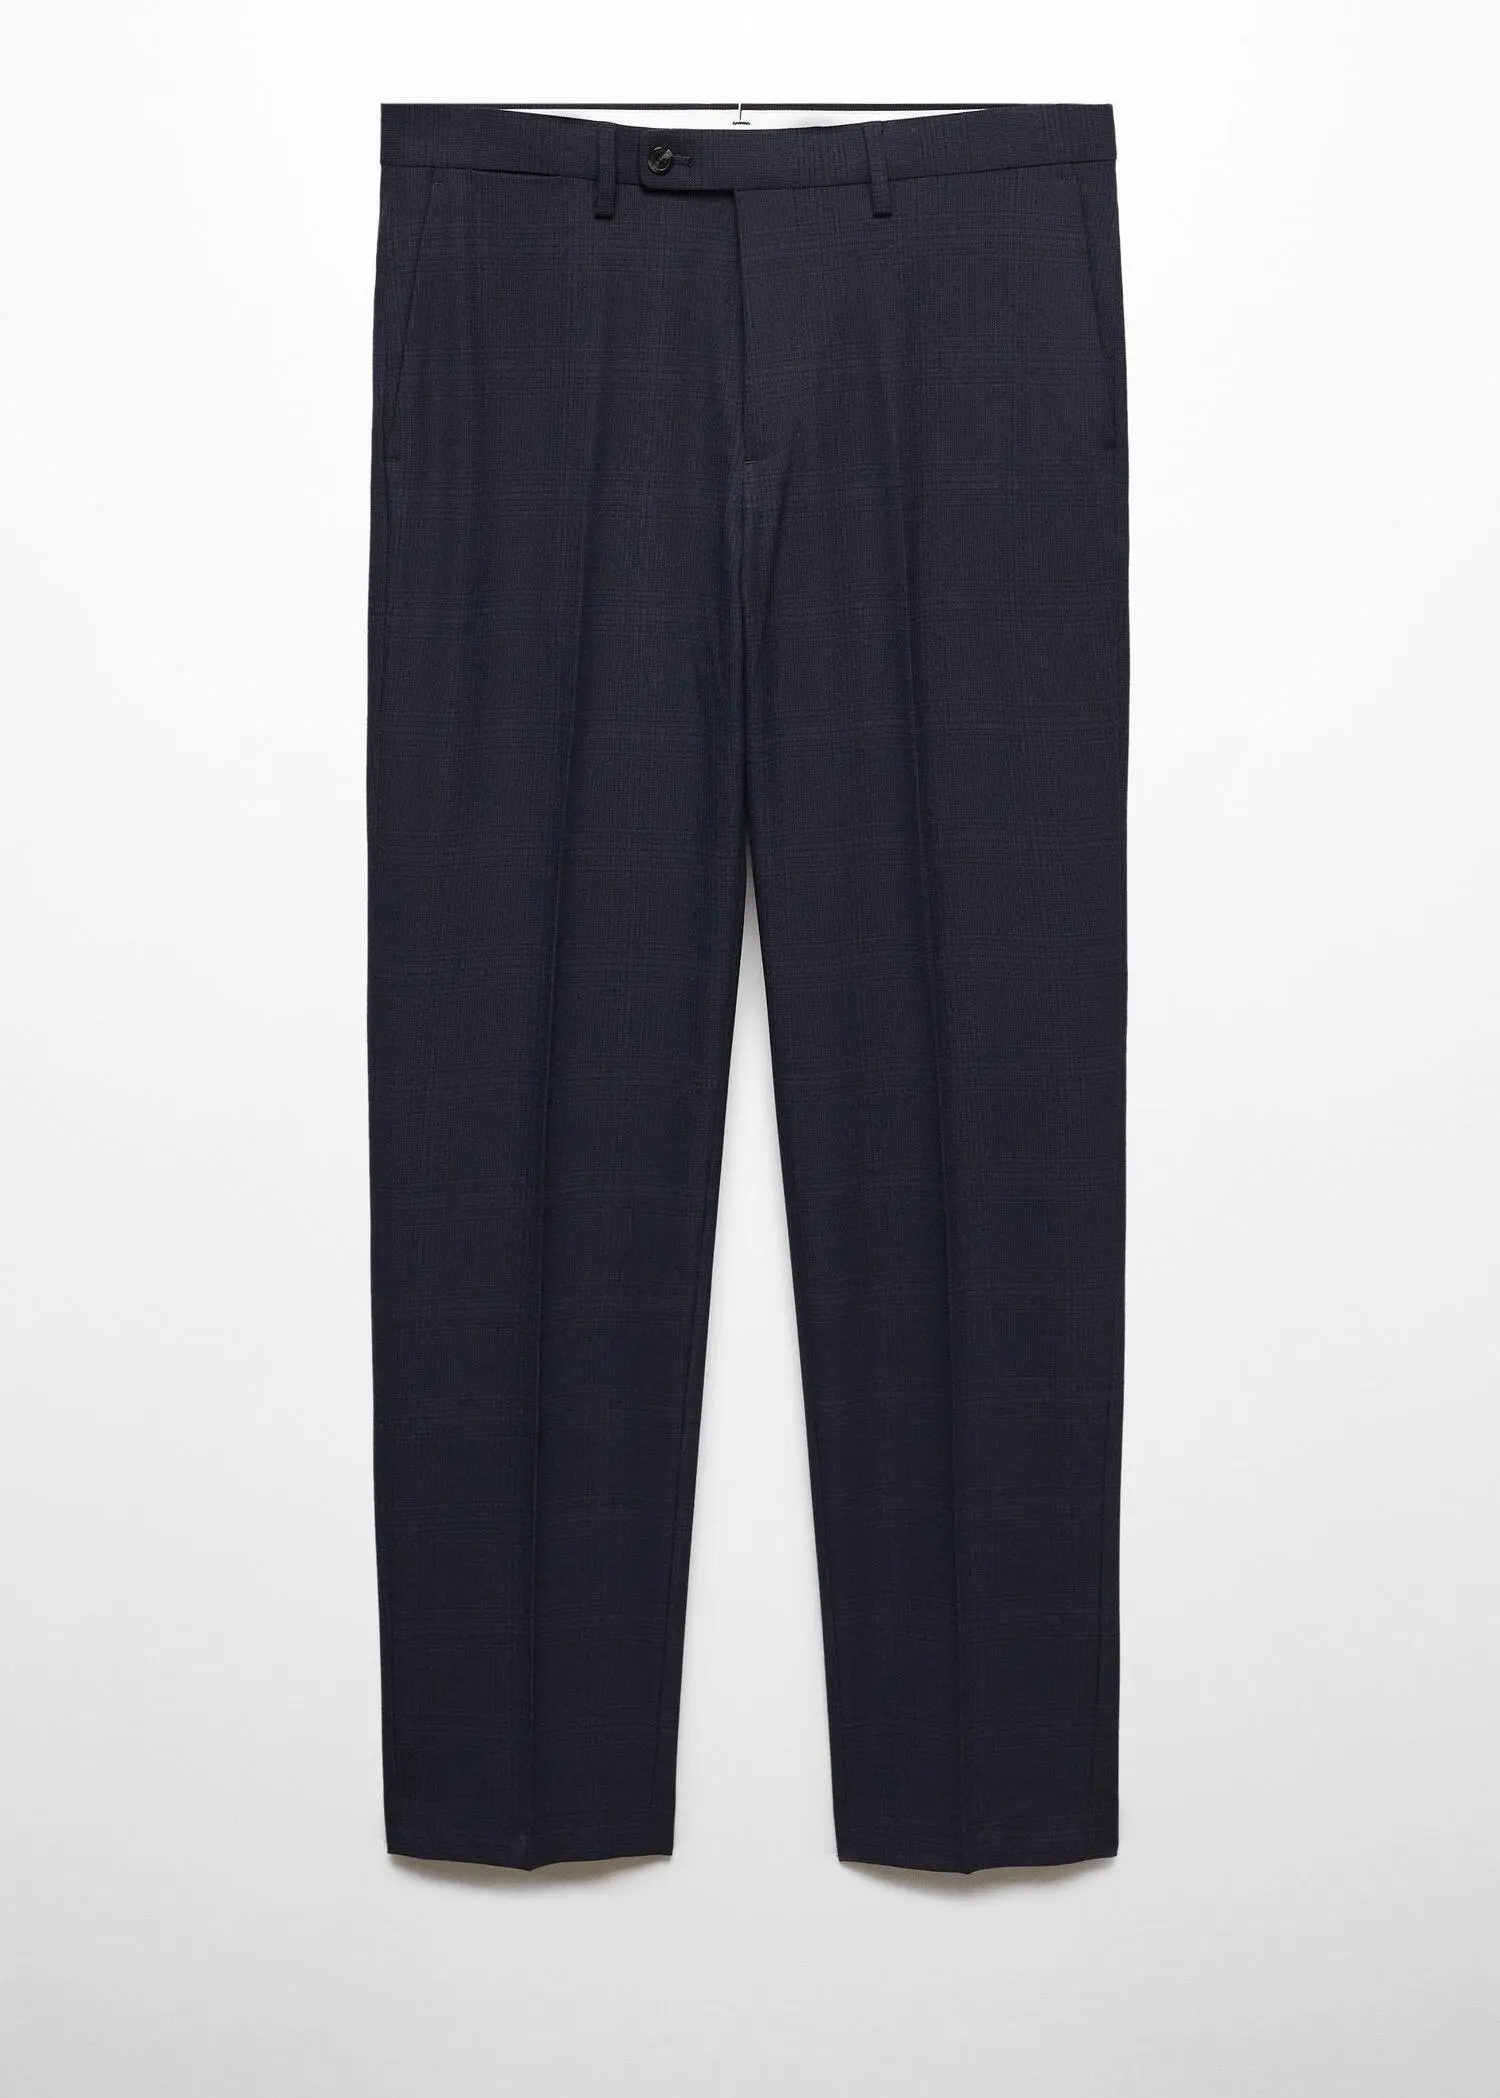 Mango Stretch fabric super slim-fit suit pants. 1